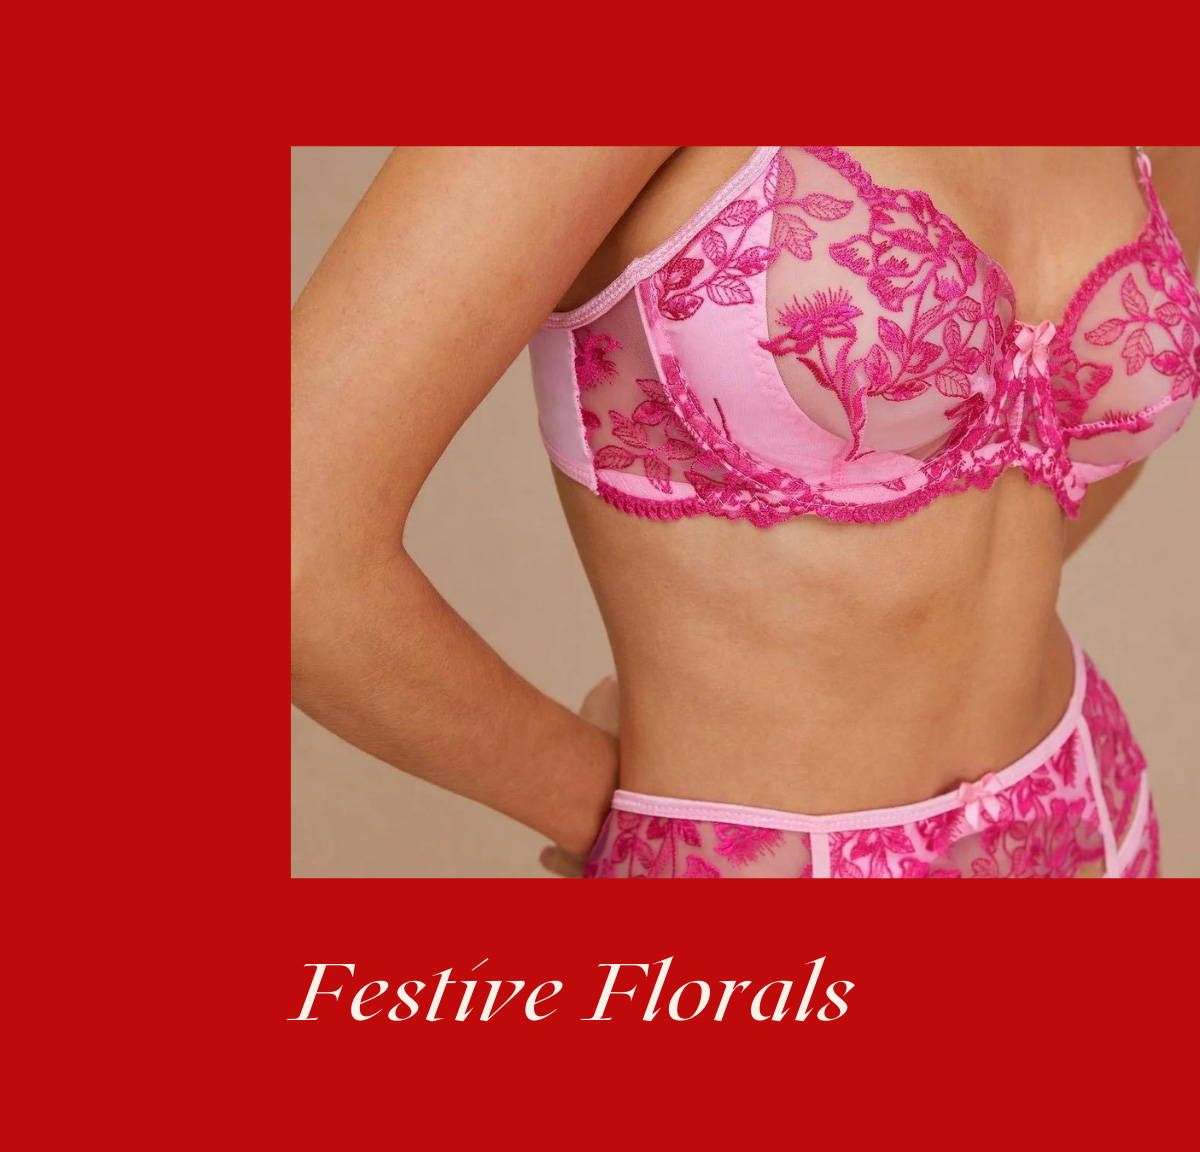 pink garter belt lingerie set for holiday